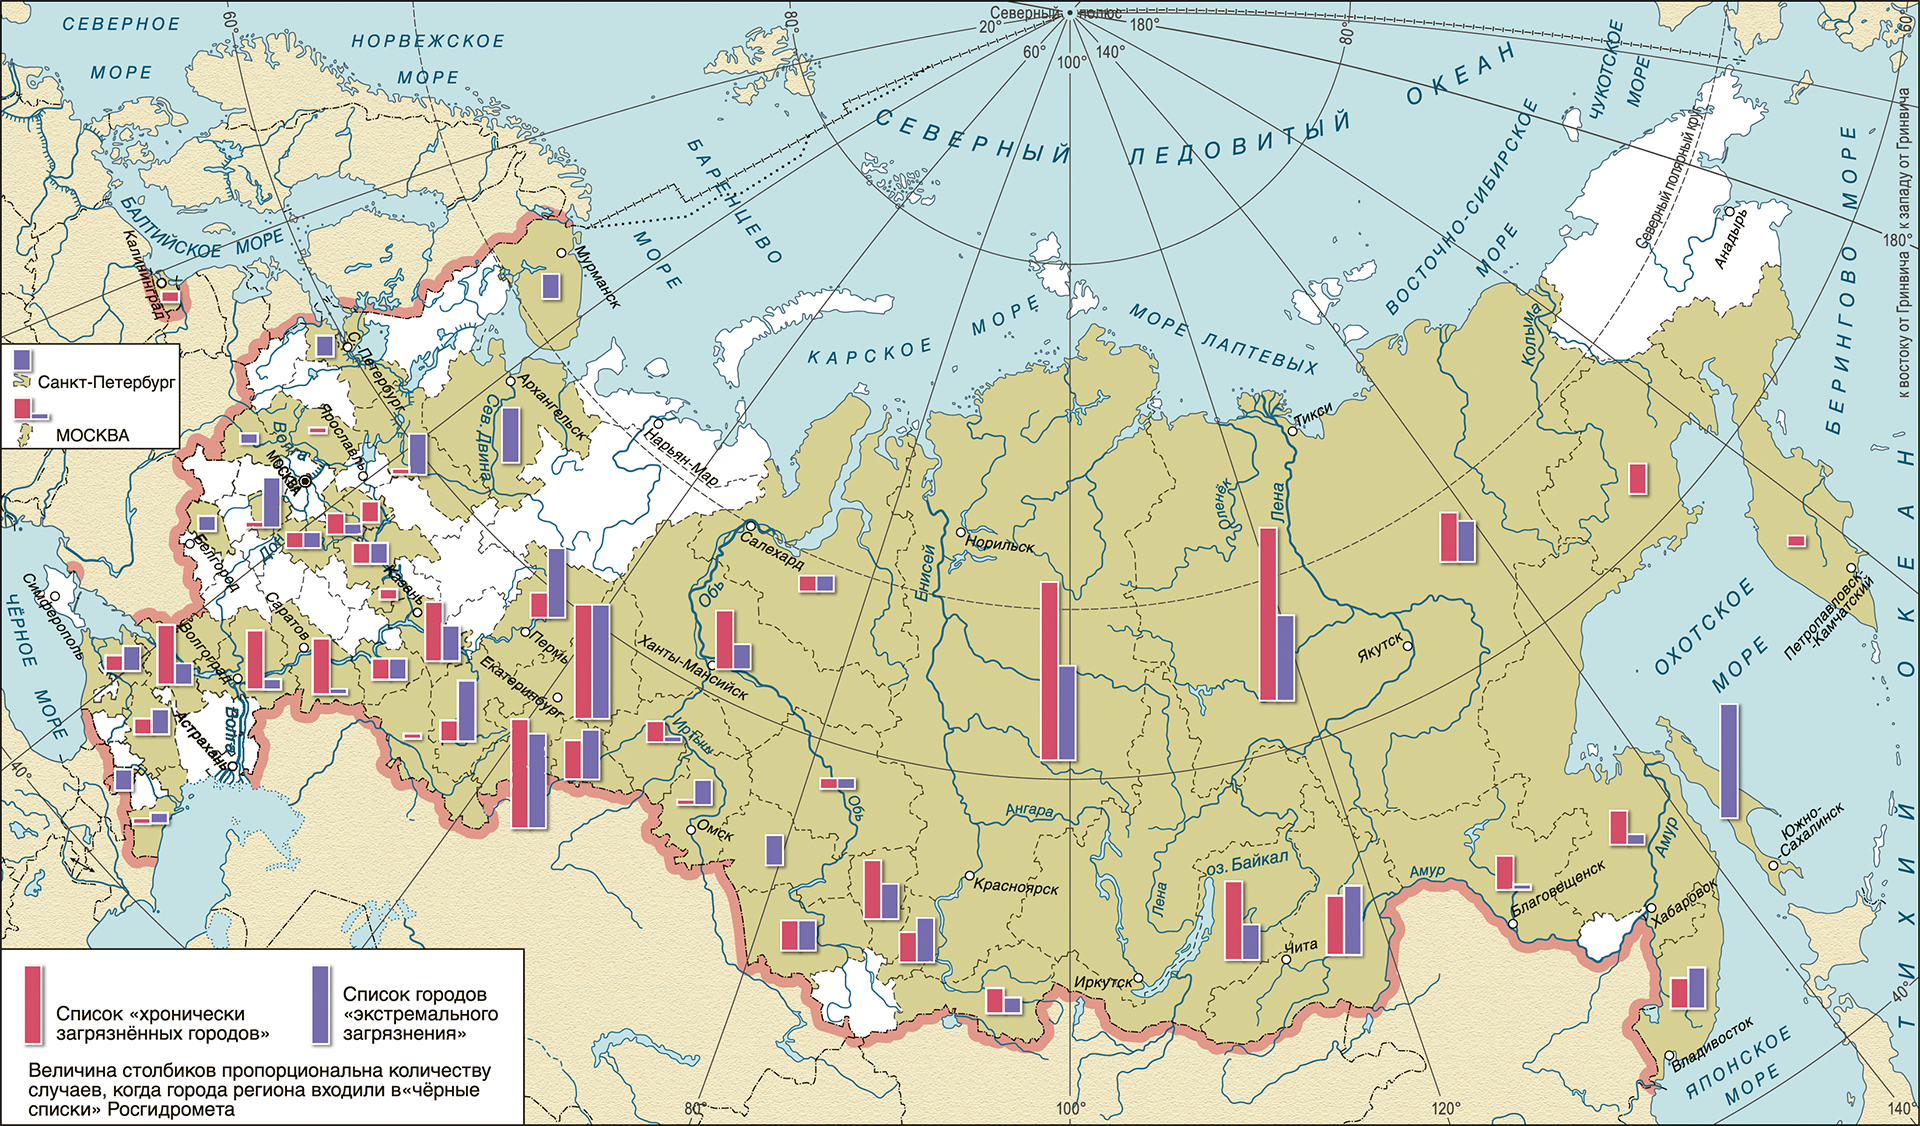  Города с высоким уровнем загрязнения воздуха по регионам России, 2004–2013 гг. 